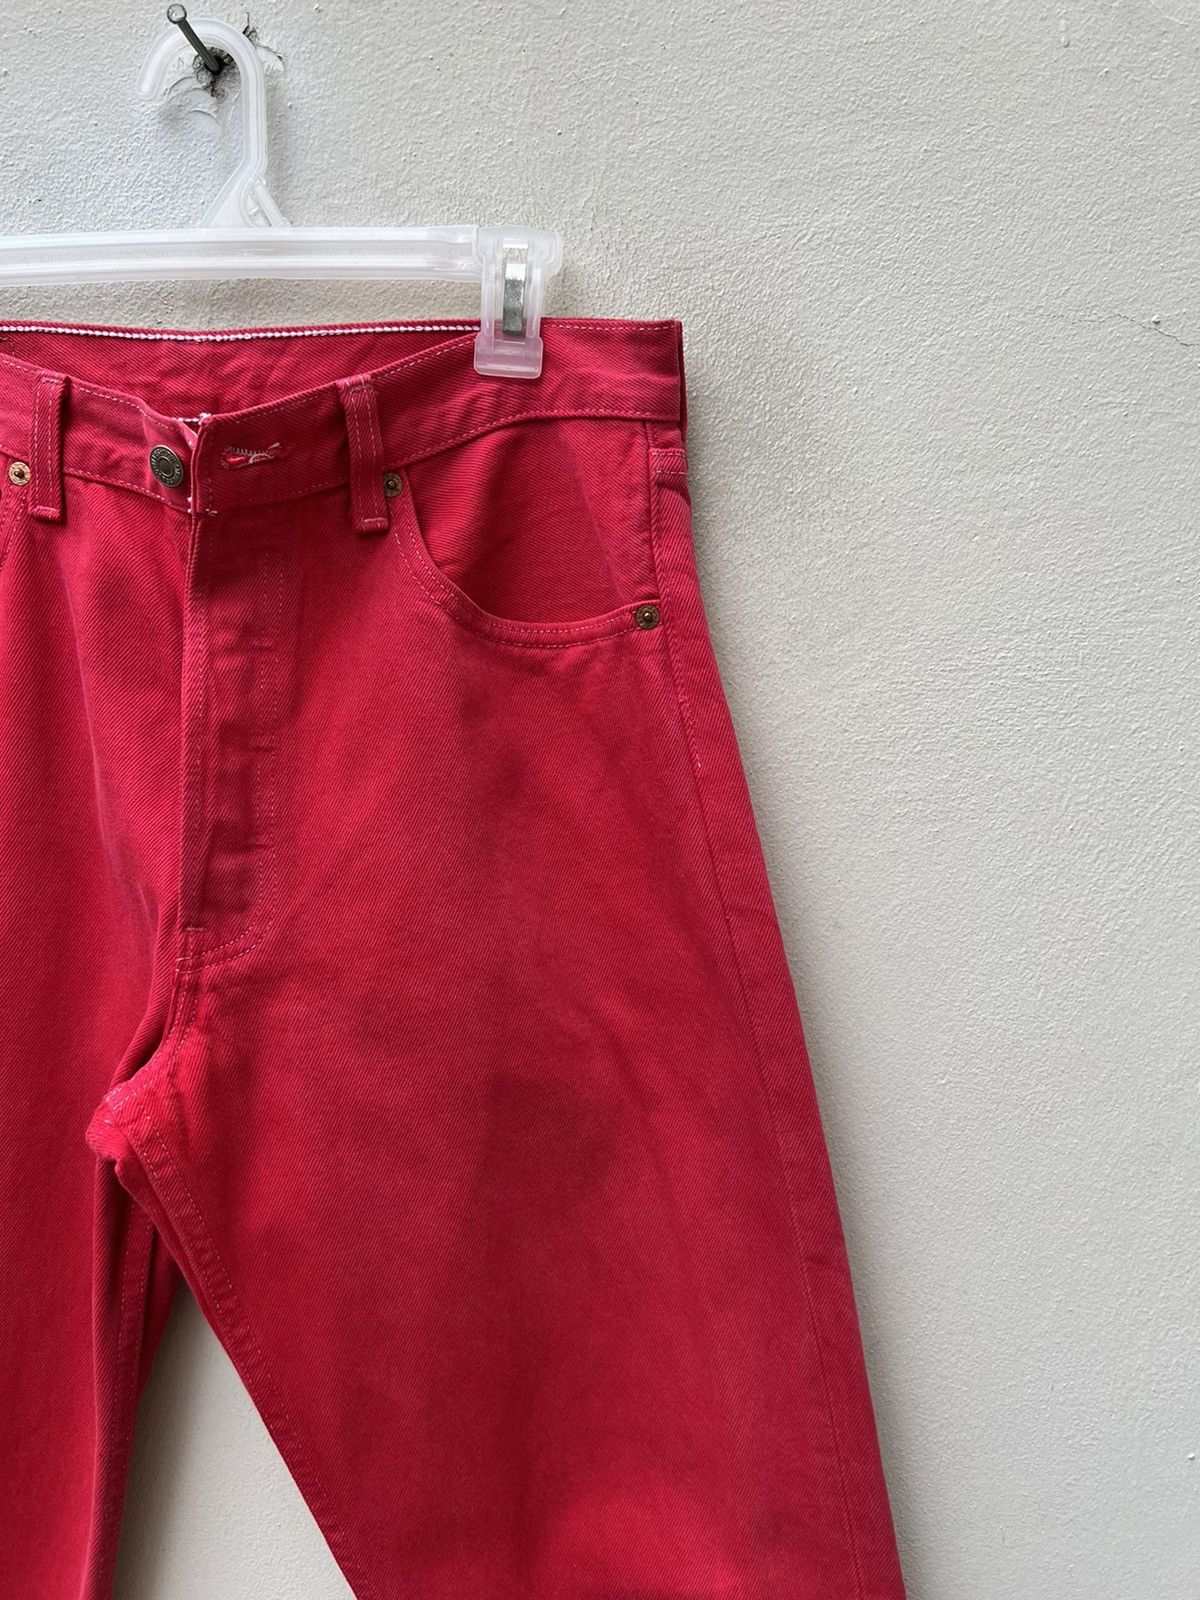 Vintage Vintage 1999 Levi’s 501 Fade Red Denim Jeans Size US 31 - 11 Thumbnail